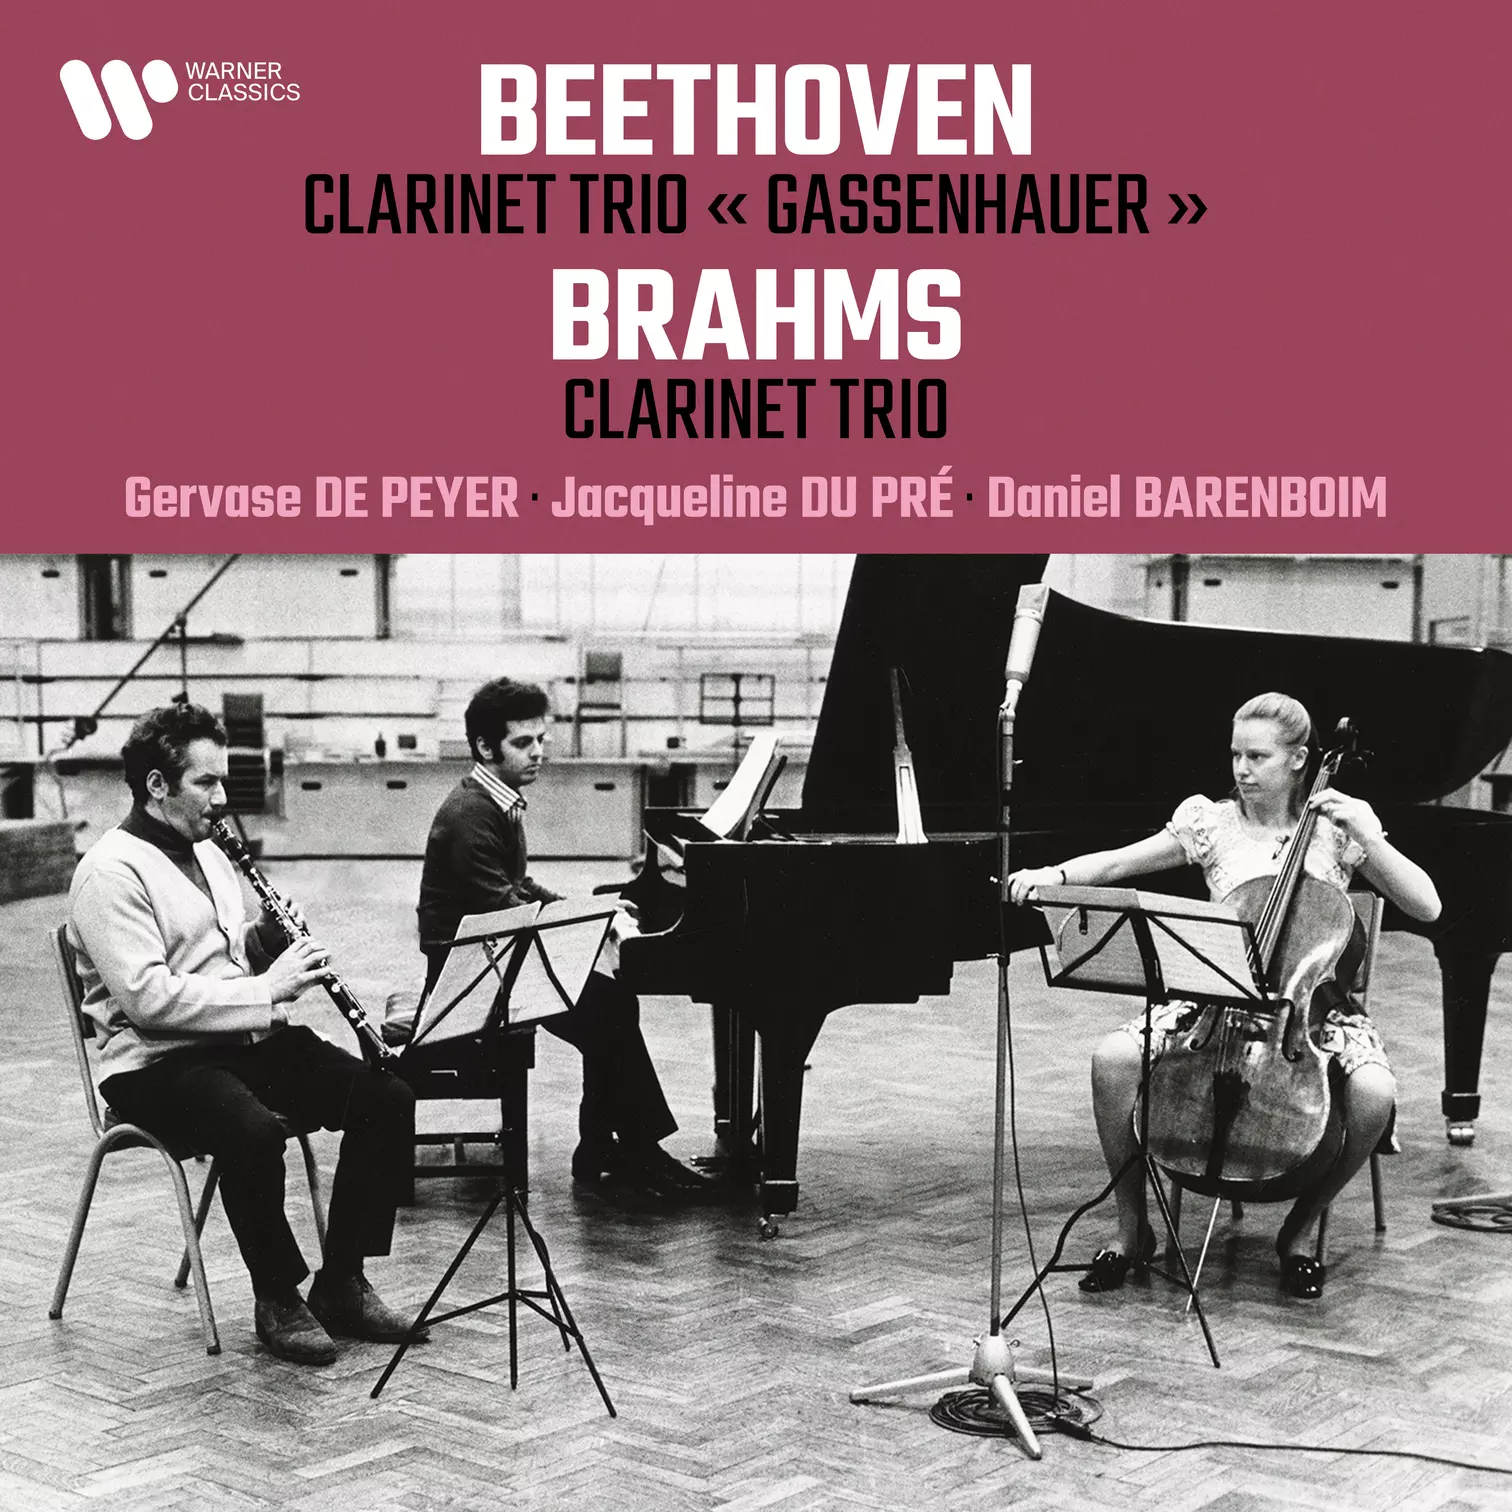 Clarinet Trio “Gassenhauer” - Brahms: Clarinet Trio